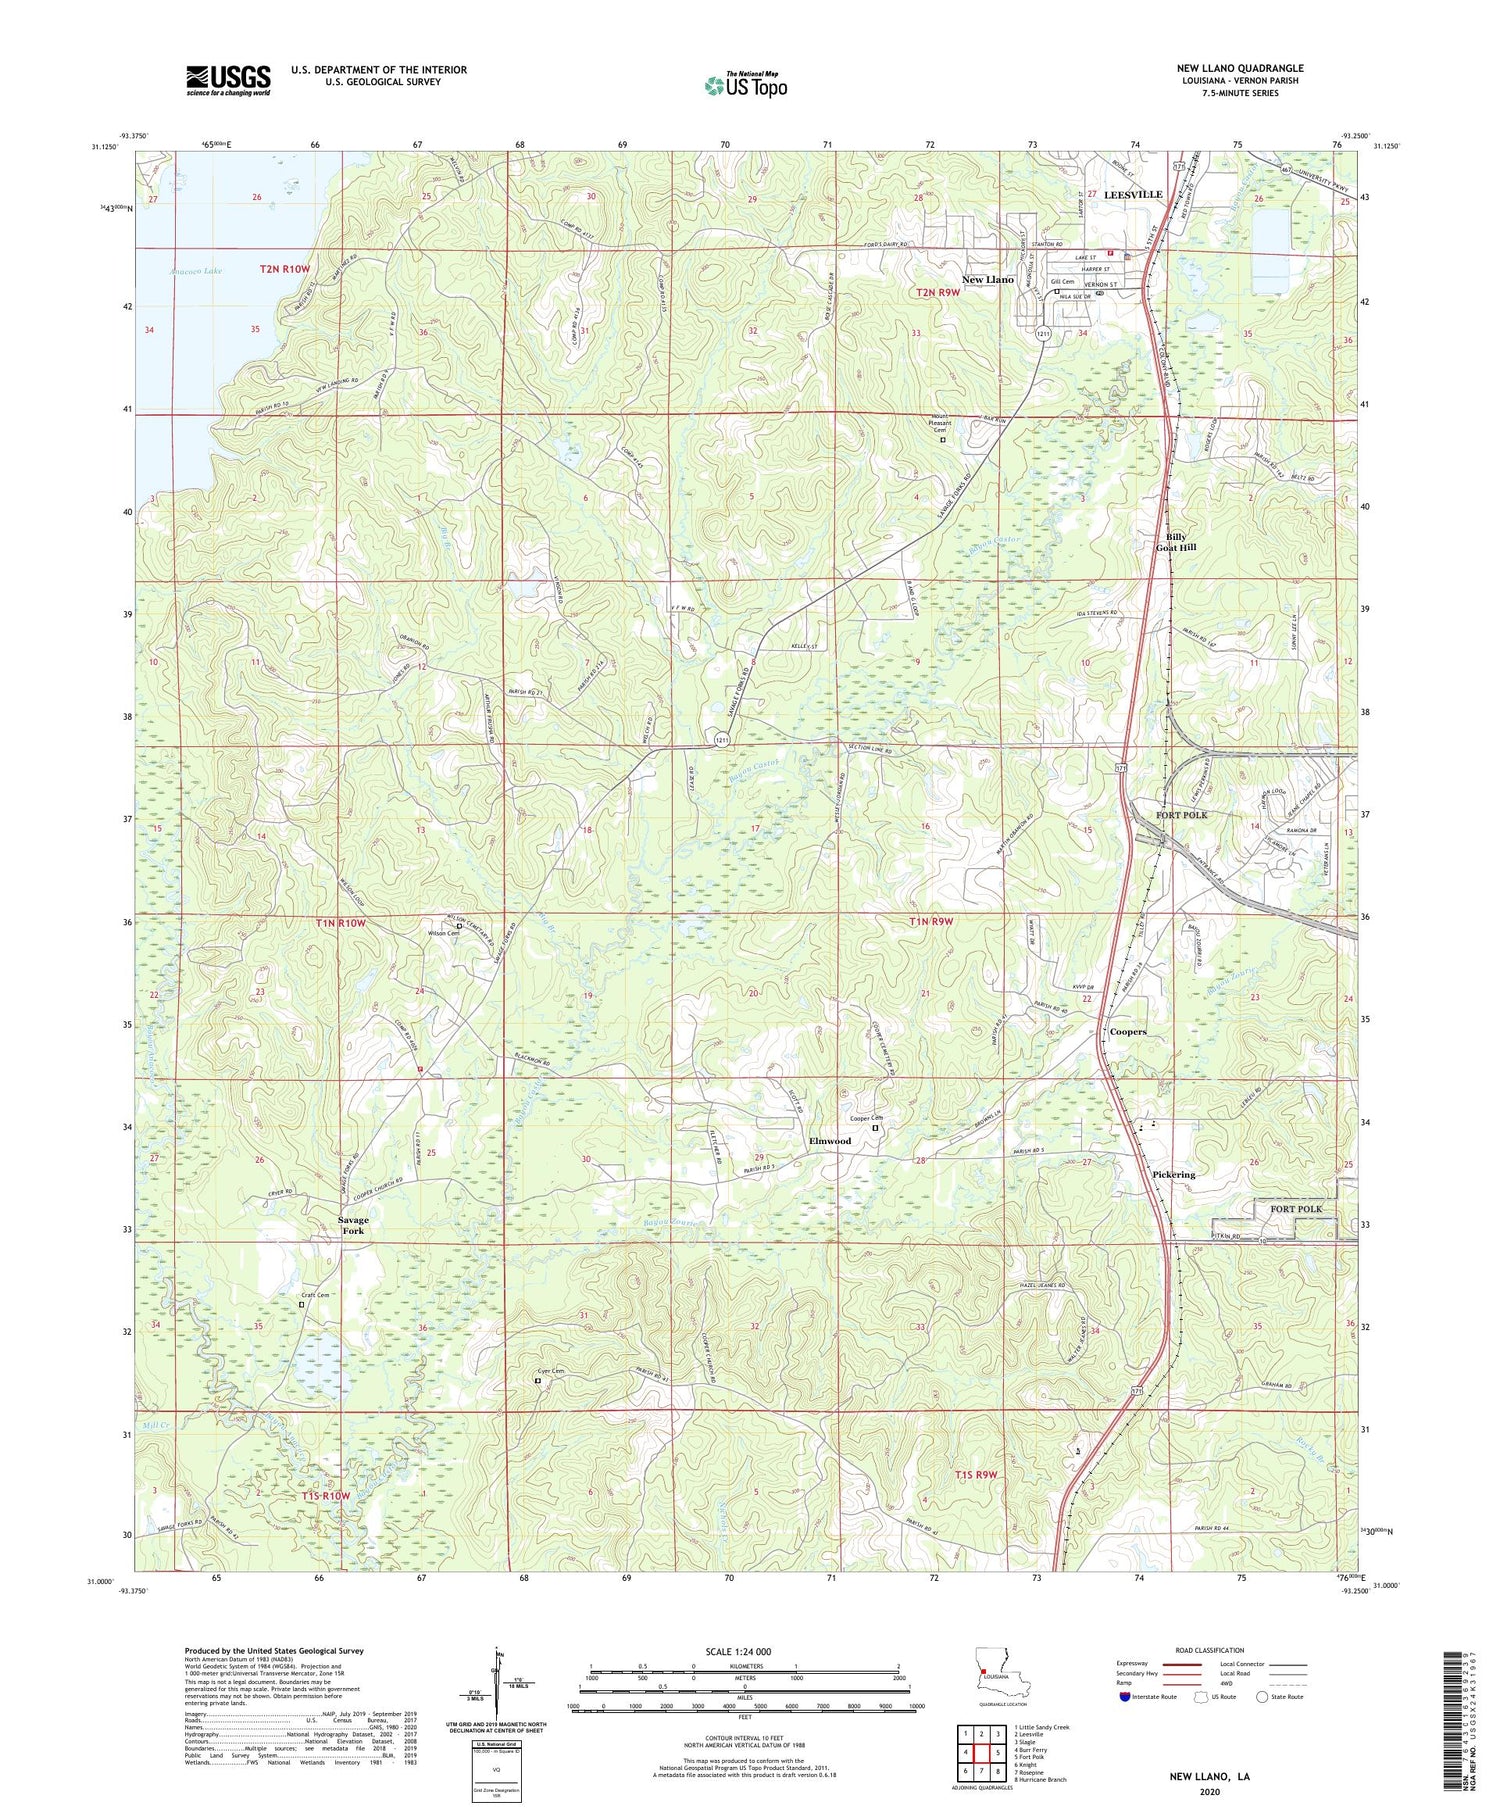 New Llano Louisiana US Topo Map Image